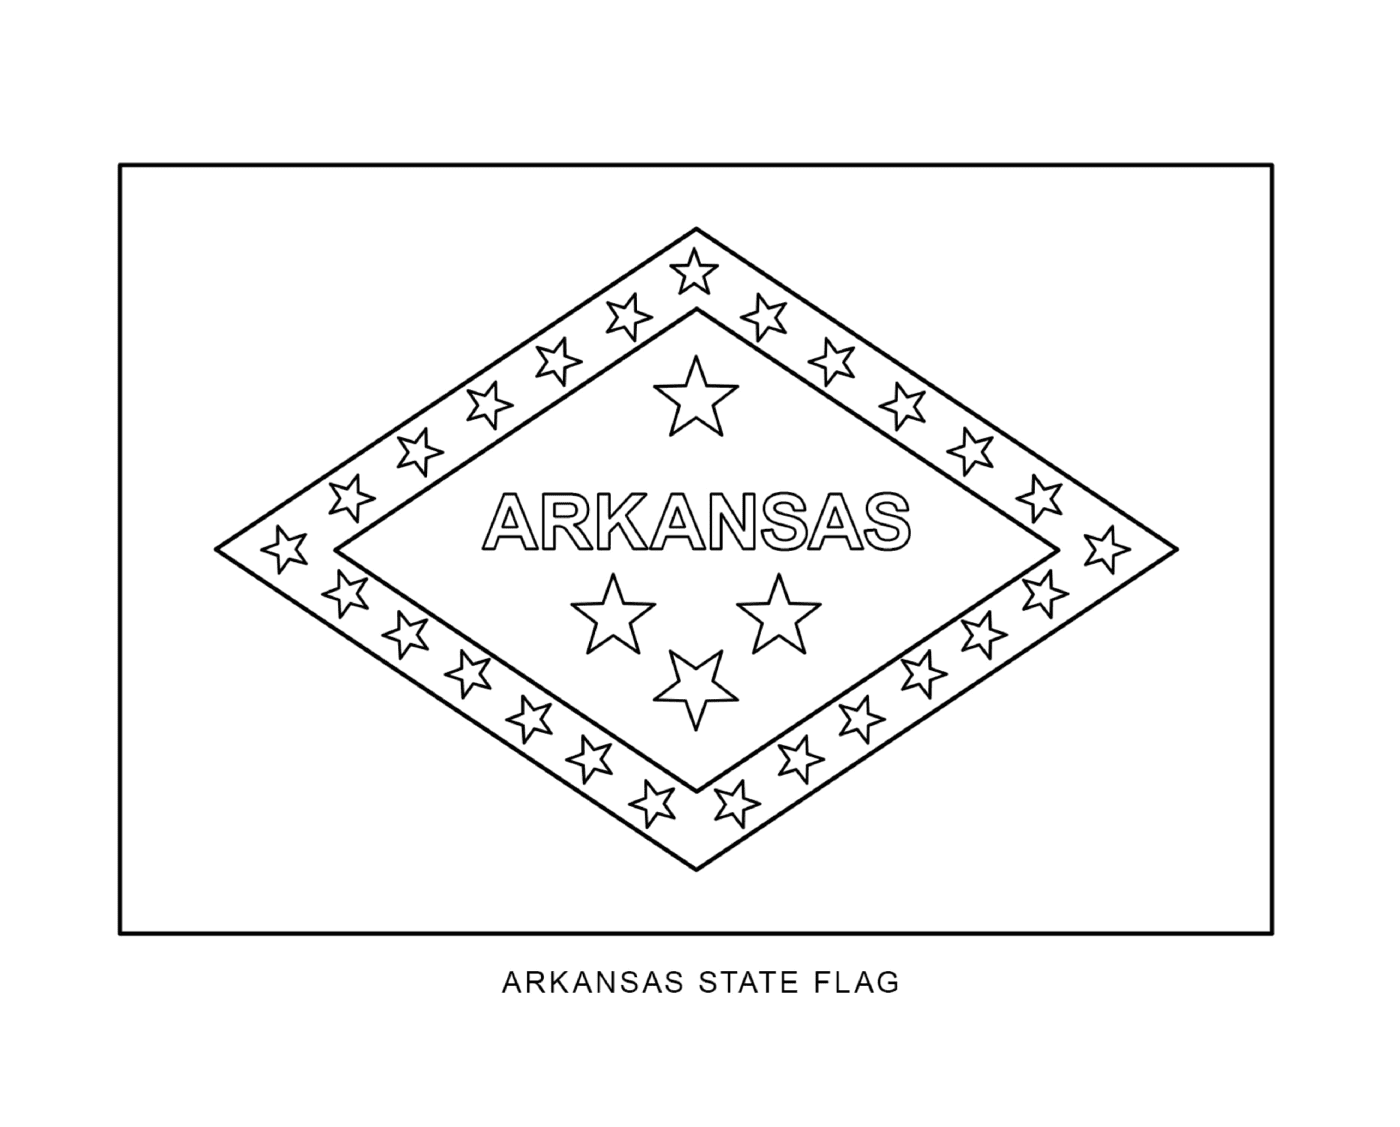  Bandeira do estado de Arkansas composta de estrelas 